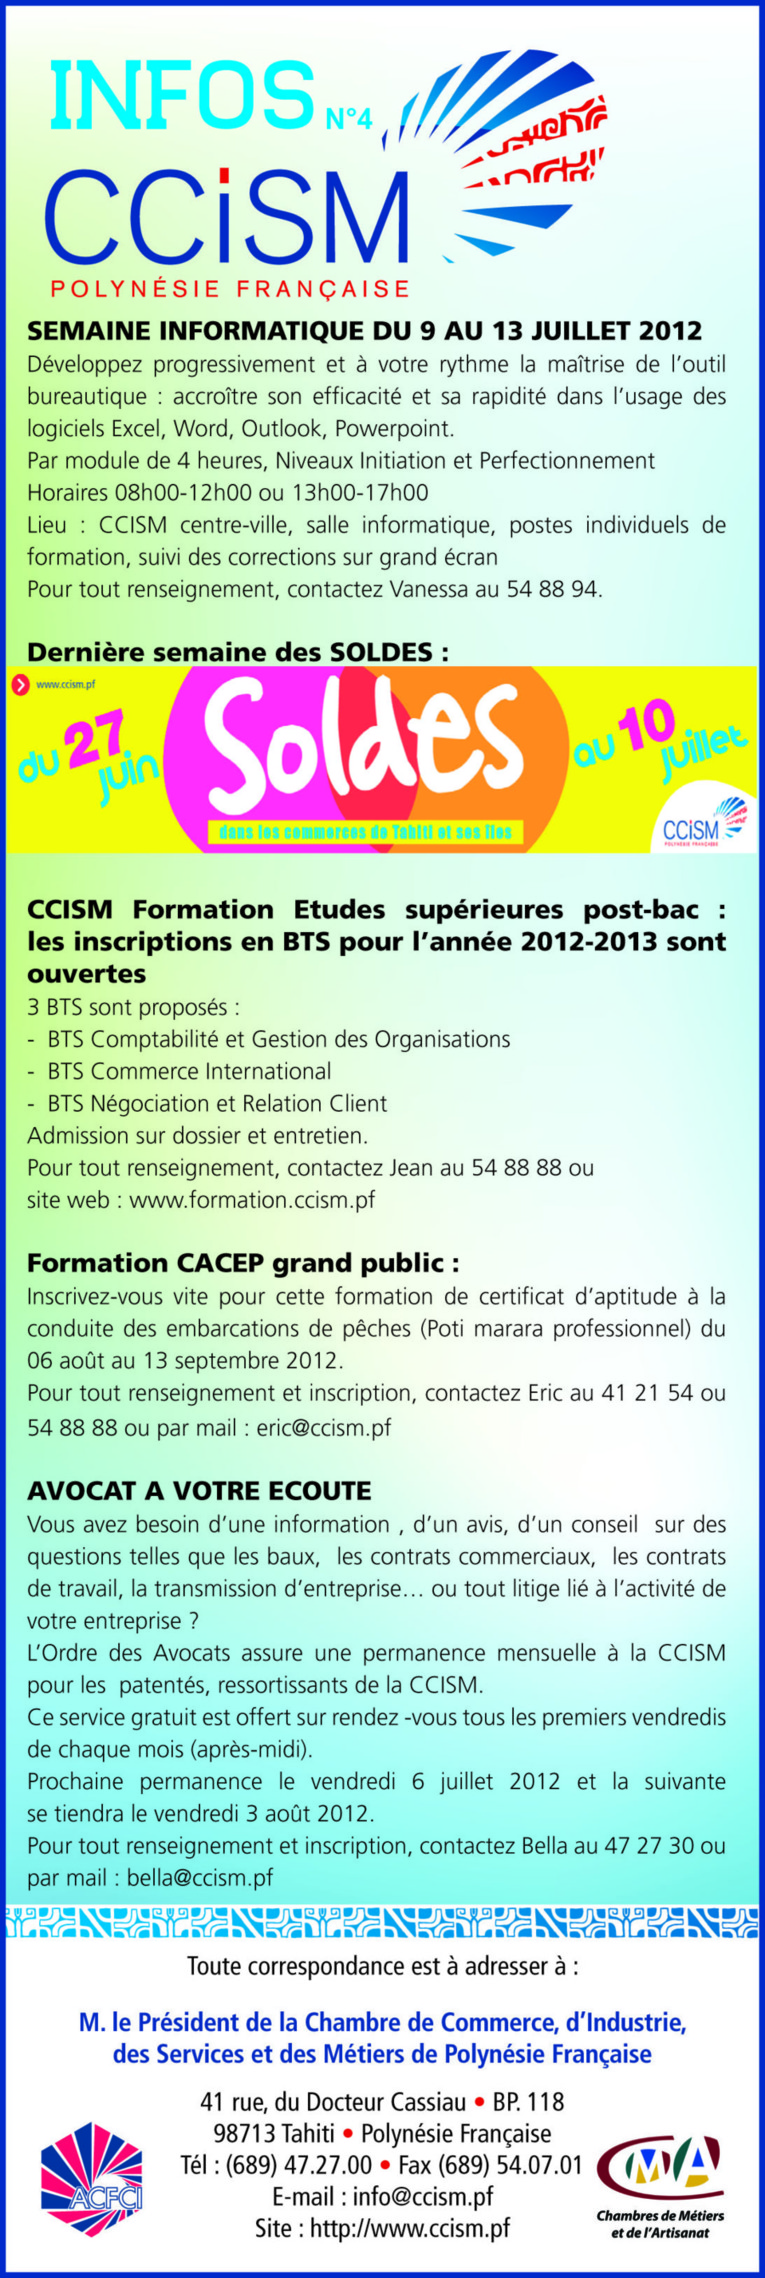 Infos CCISM N°4